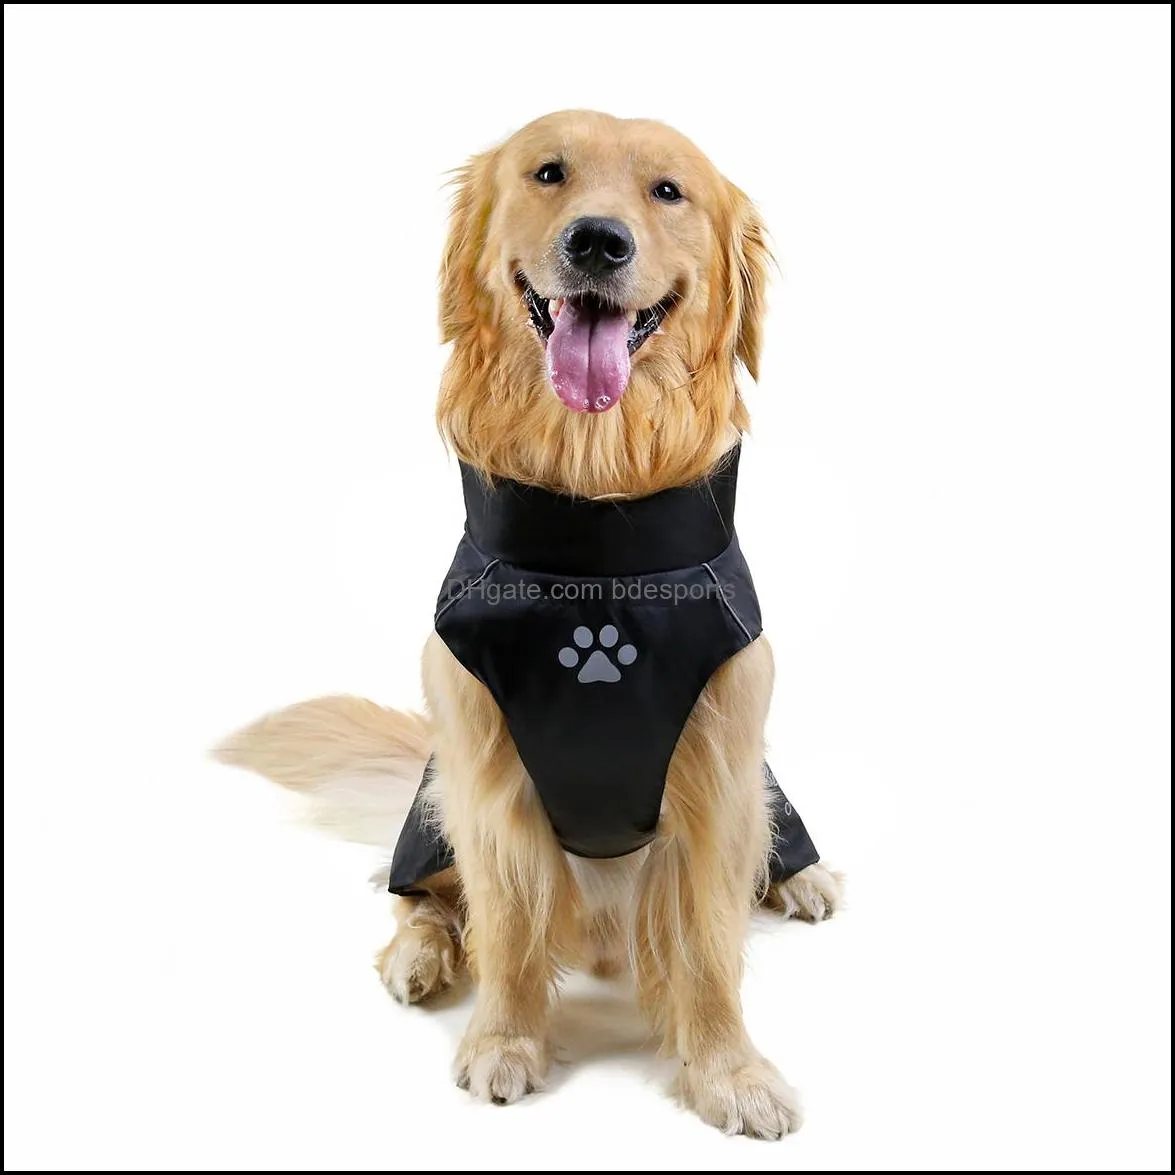 Dog Apparel Clothes Pet Rain Coat Waterproof Jackets Breathable Assault Raincoat for Big Dogs Cats Apparels Pets Supplies 7XL 8XL 9XL